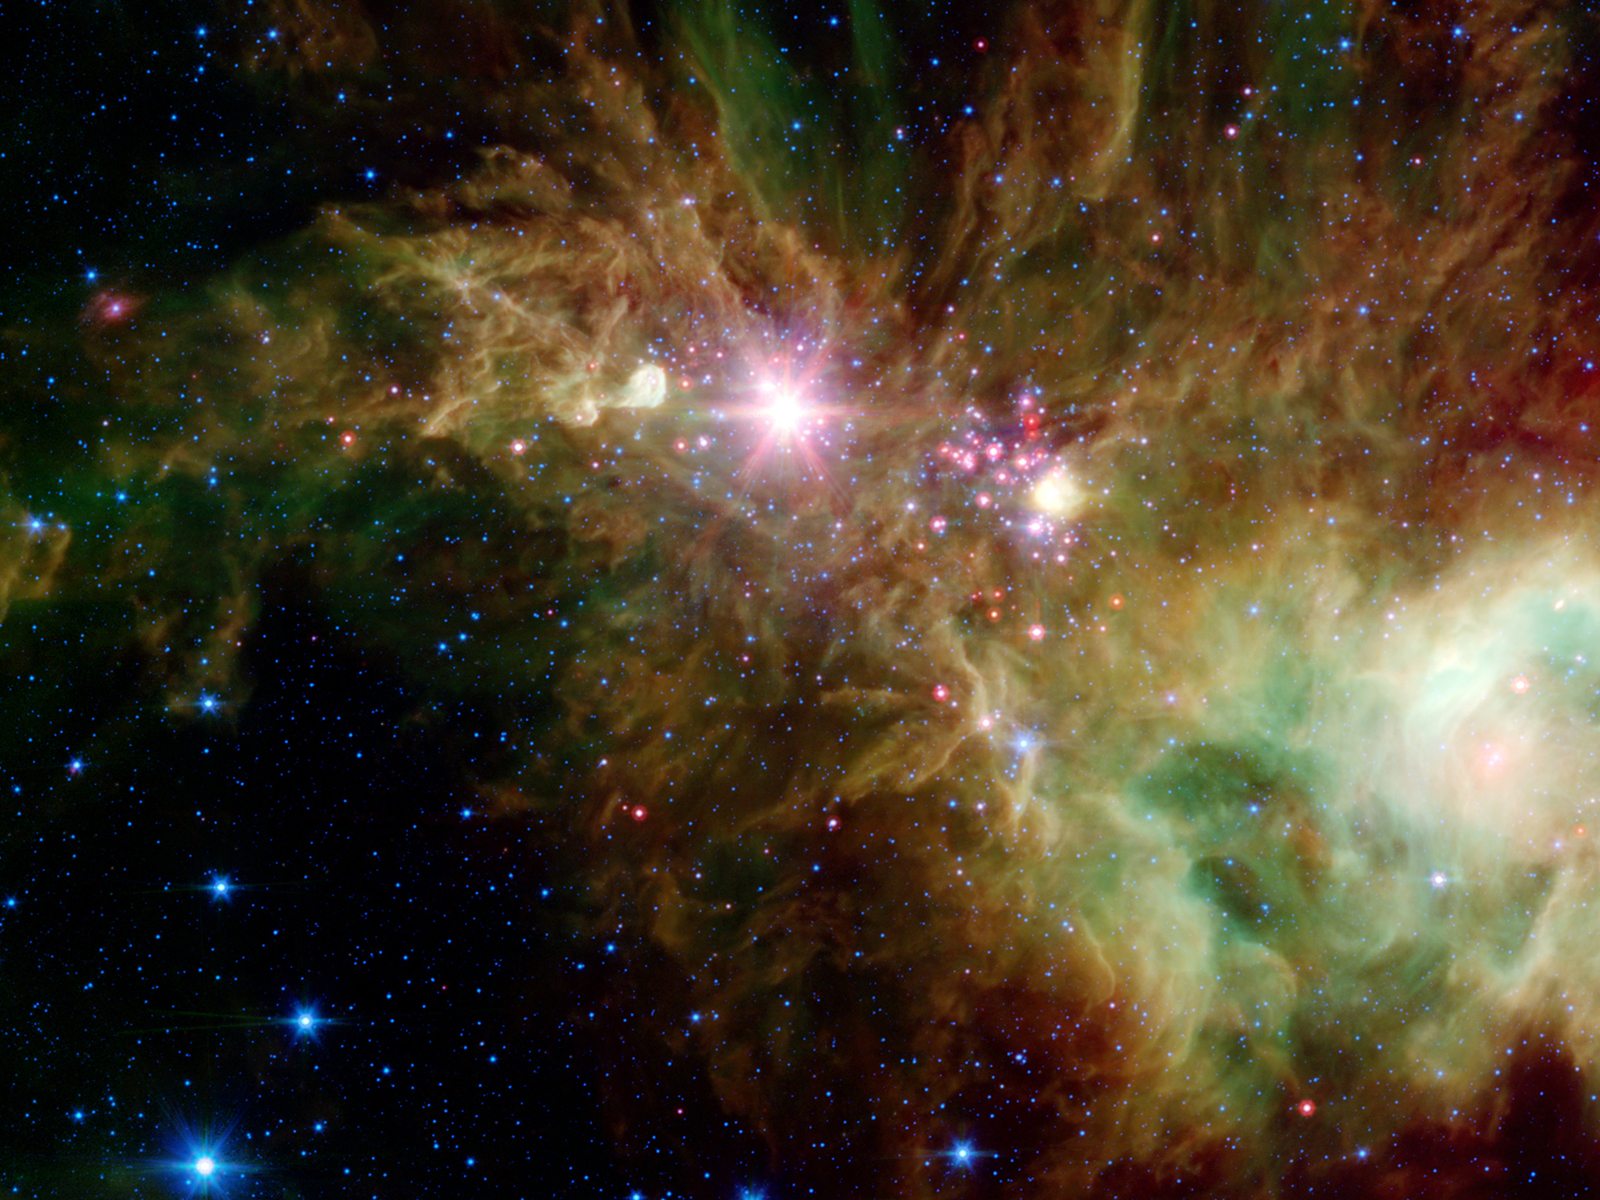 http://1.bp.blogspot.com/_GPC2mUKXP_E/TR3f4tWaNvI/AAAAAAAAADE/qxlfue4mHsc/s1600/stellar-nebula-cone-nebula-stars-wallpaper.jpg